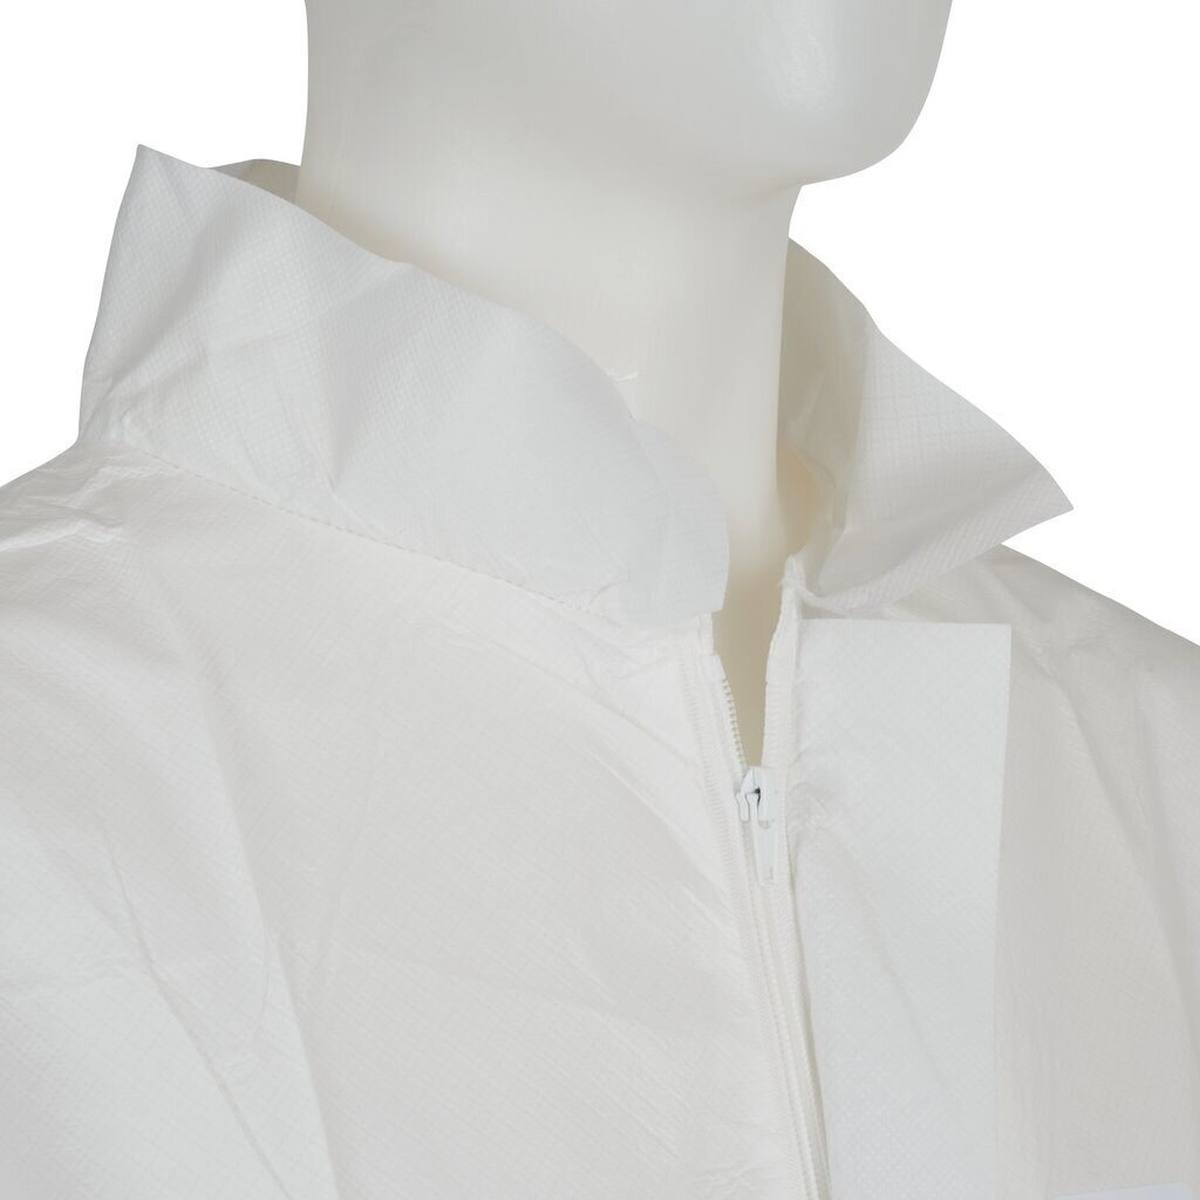 cappotto 3M 4440, bianco, taglia 2XL, particolarmente traspirante, molto leggero, con zip, polsini in maglia